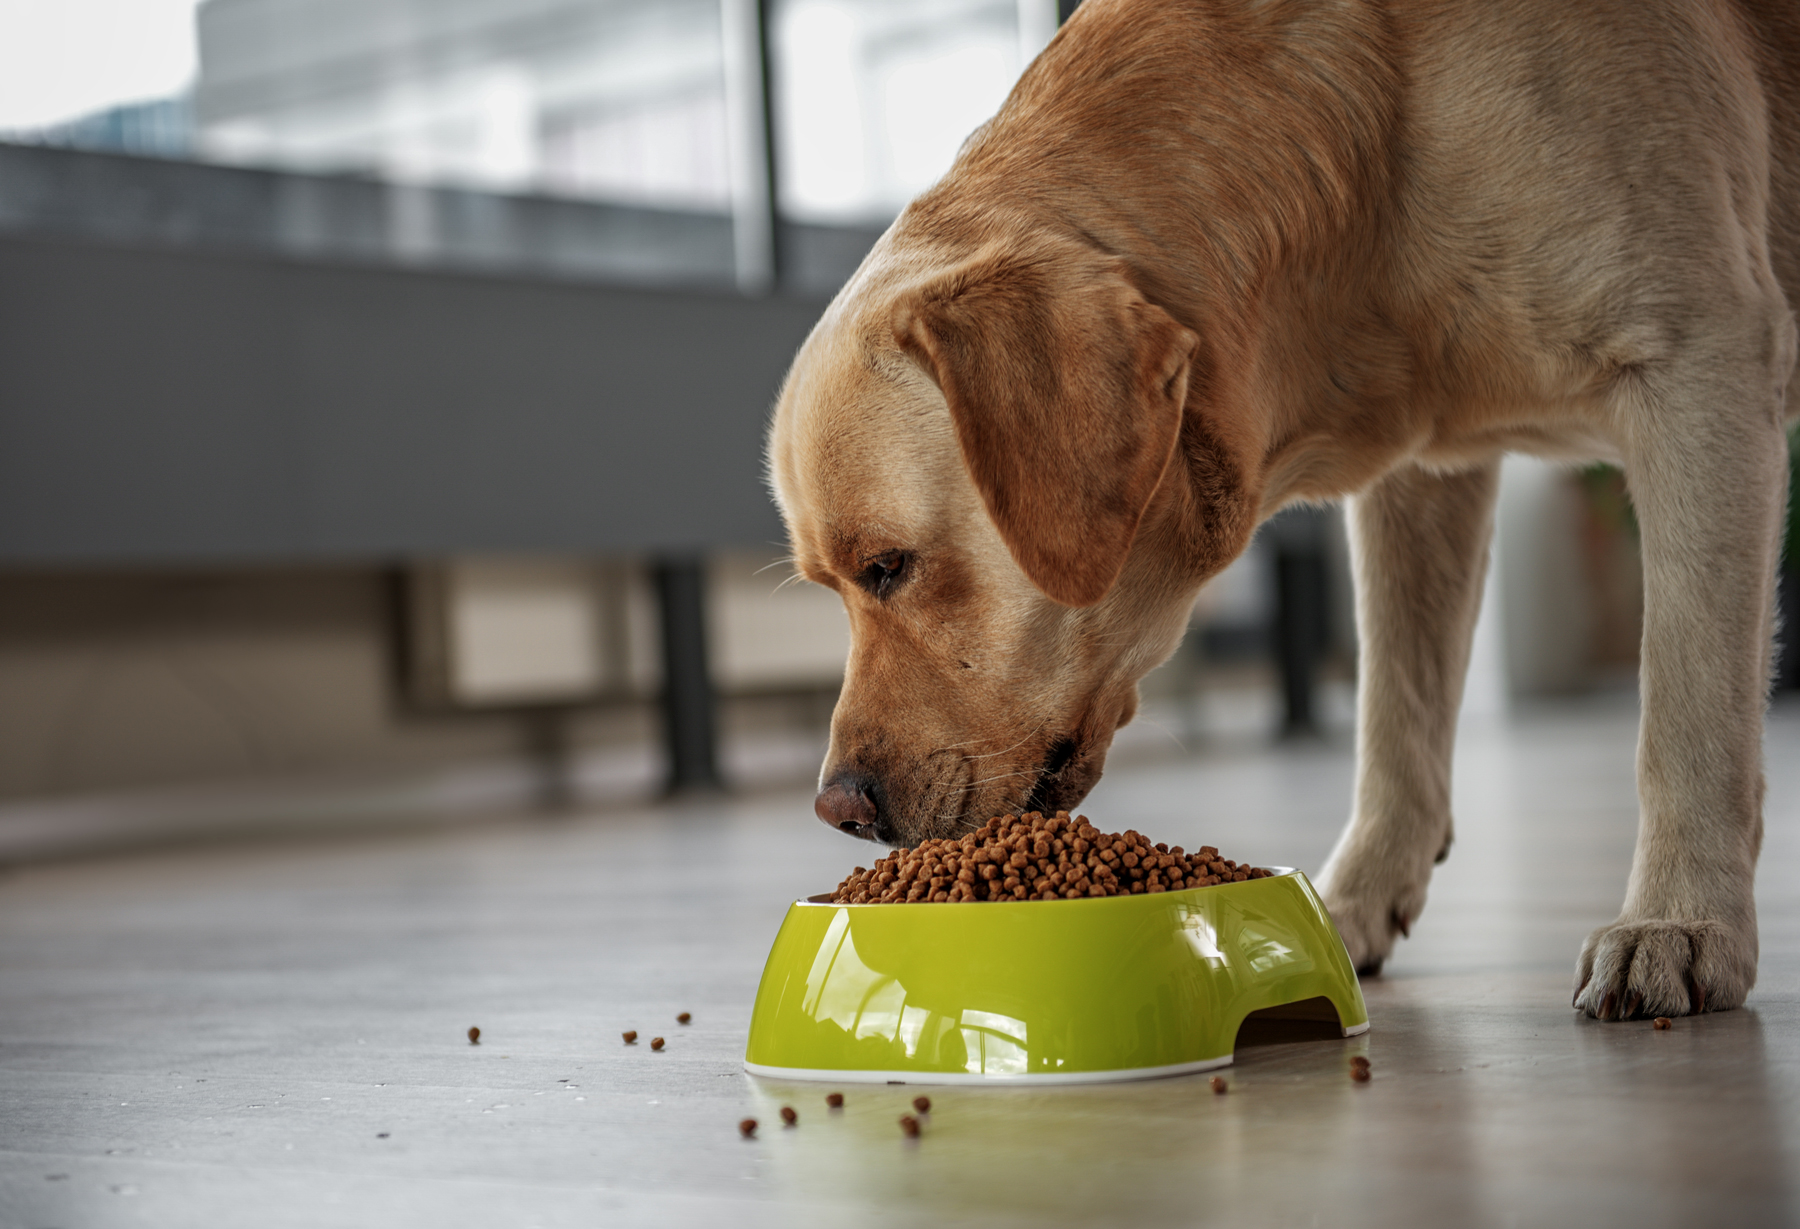 A Labrador retriever eating a bowl of dog food